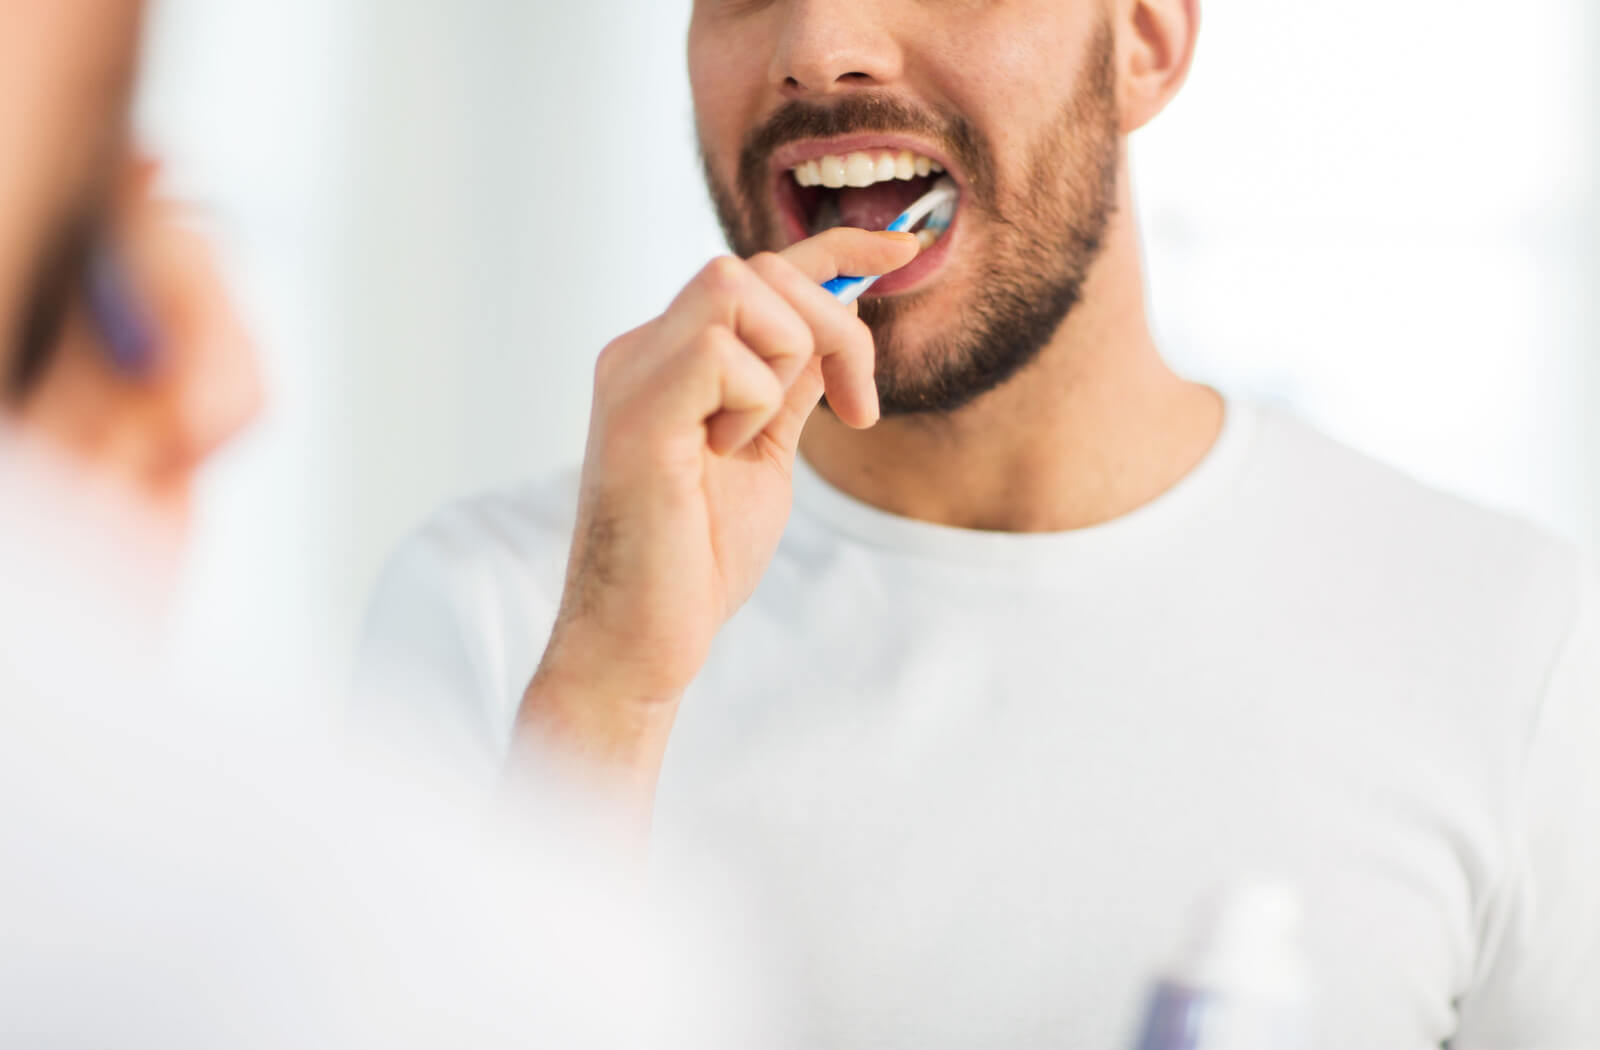 smiling man in a white shirt brushing his teeth